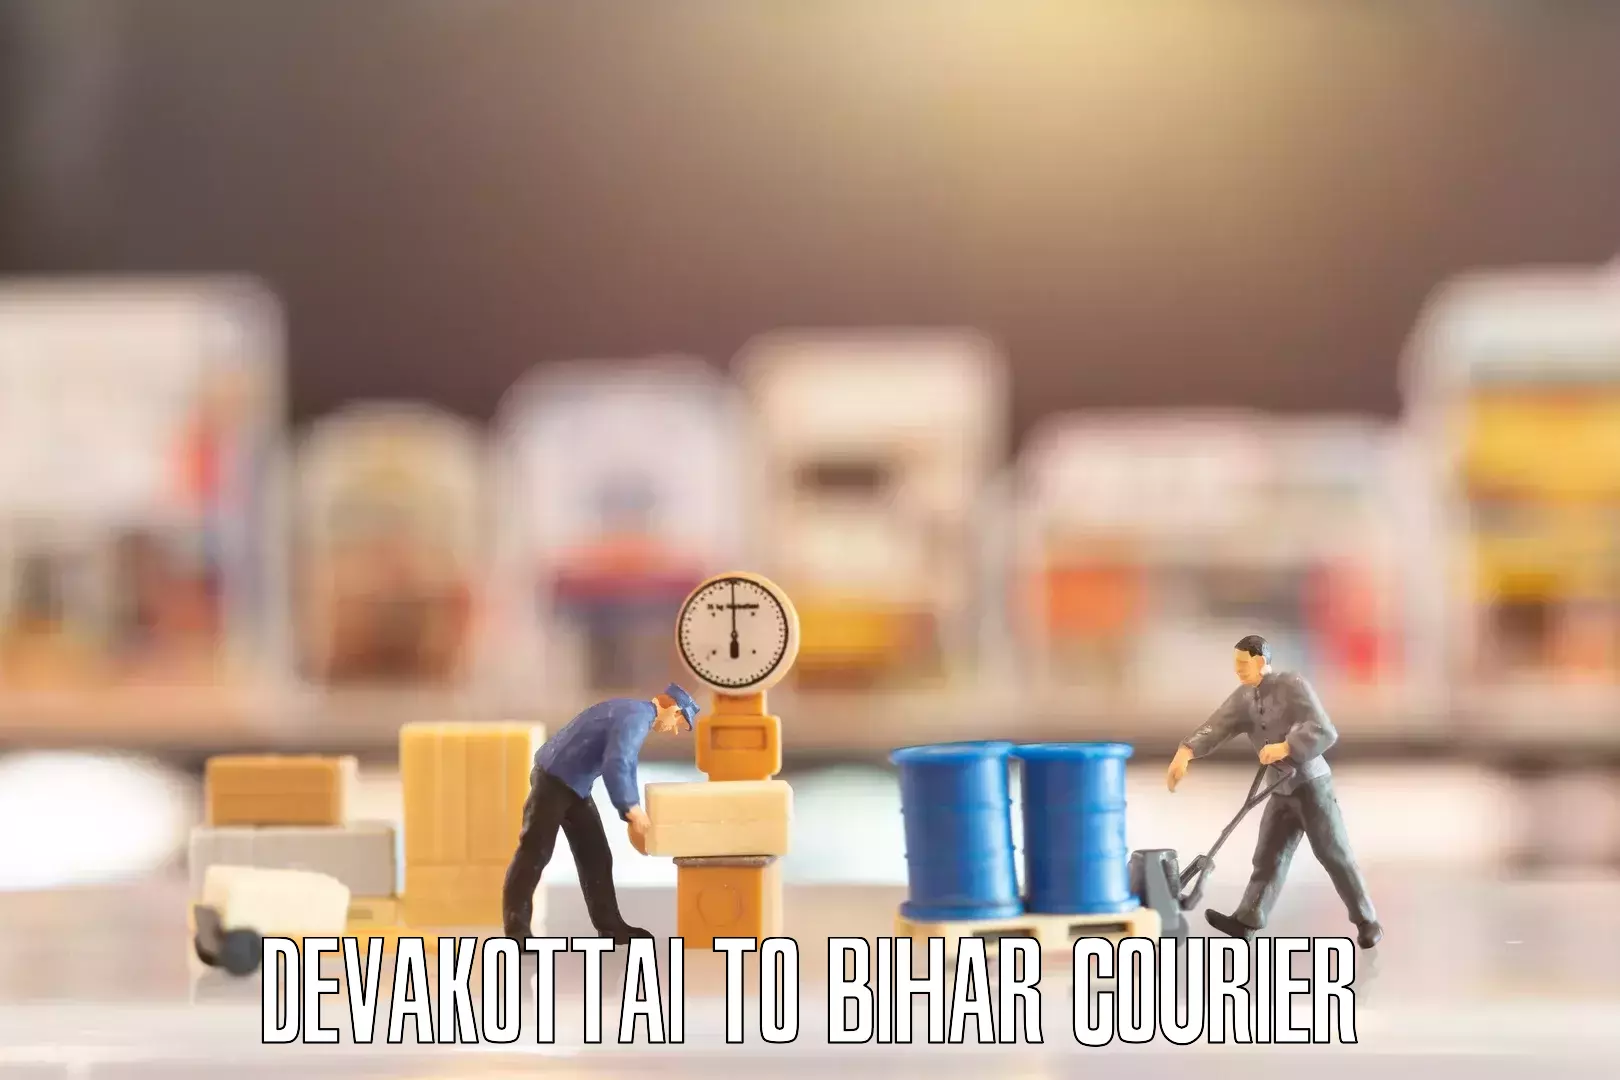 Efficient relocation services Devakottai to Bettiah